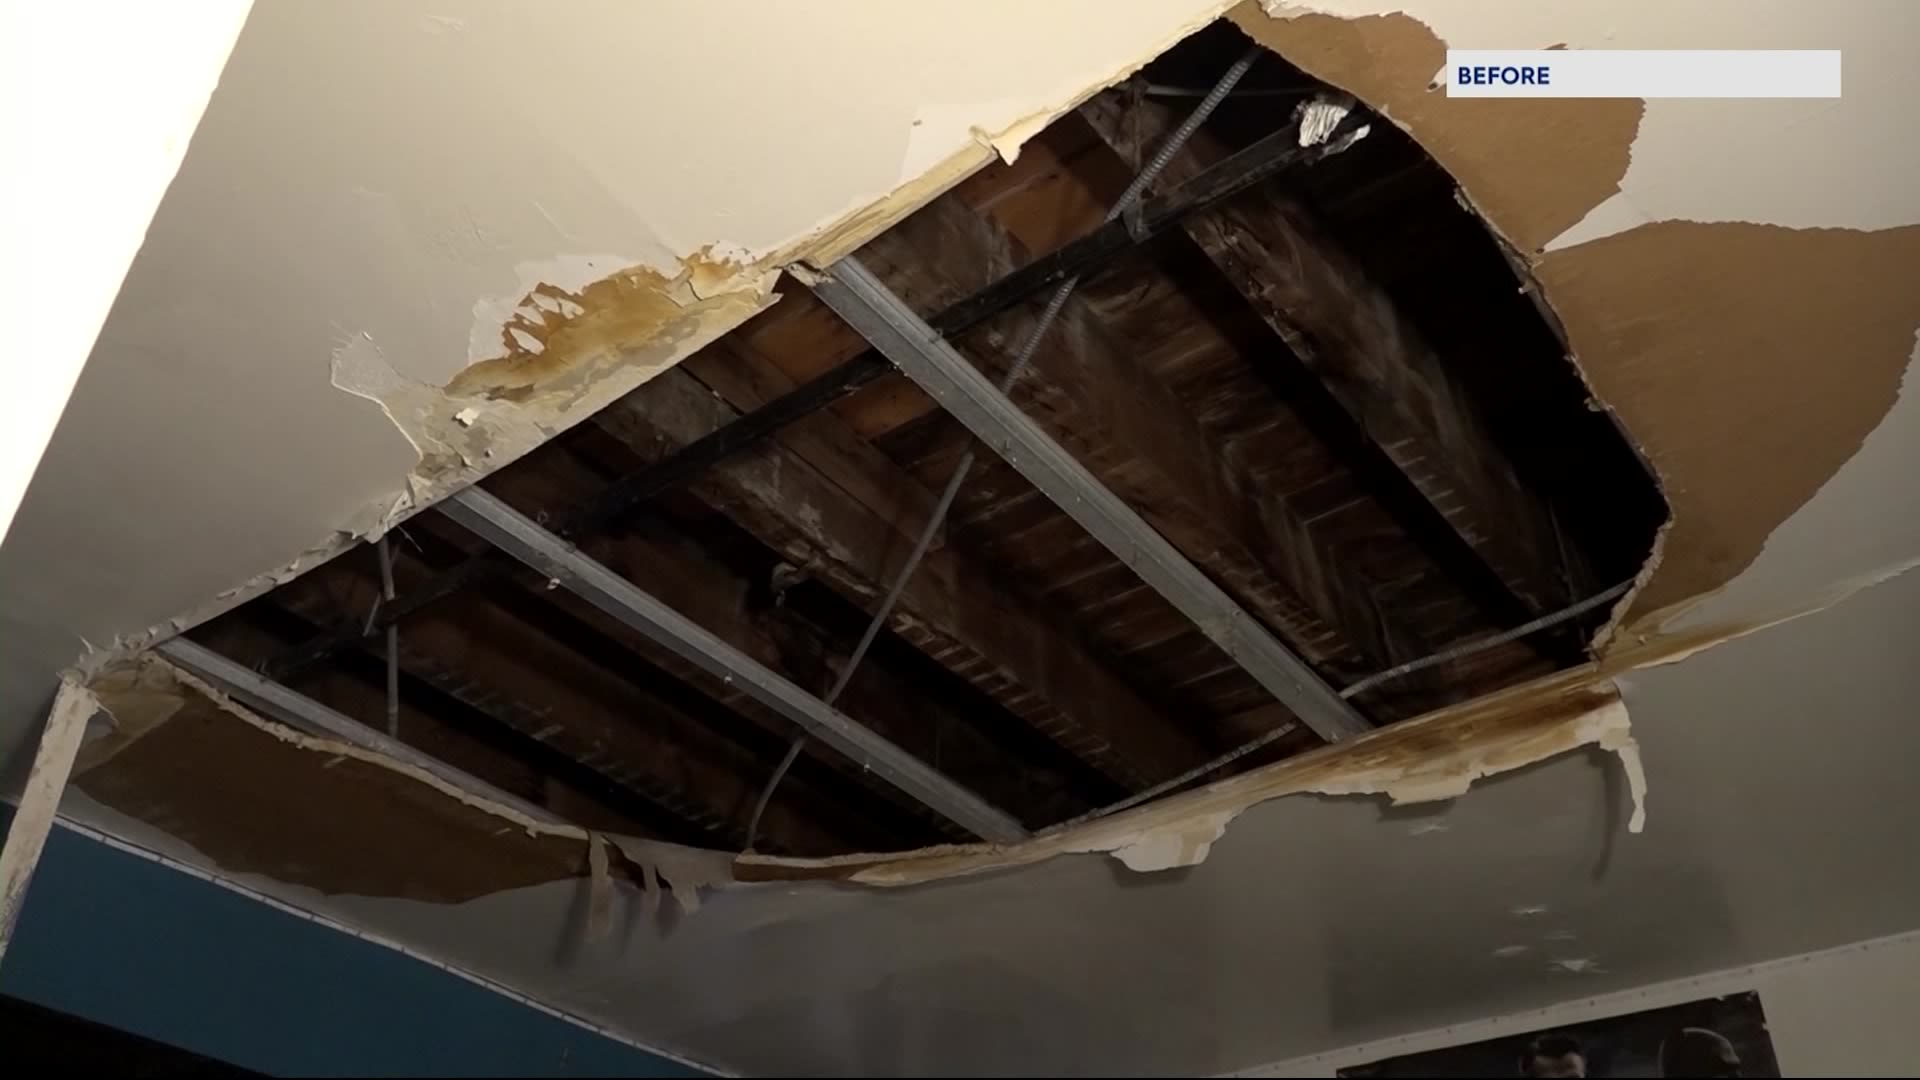 布朗克斯居民表示，在News 12报道后，天花板已得到修复